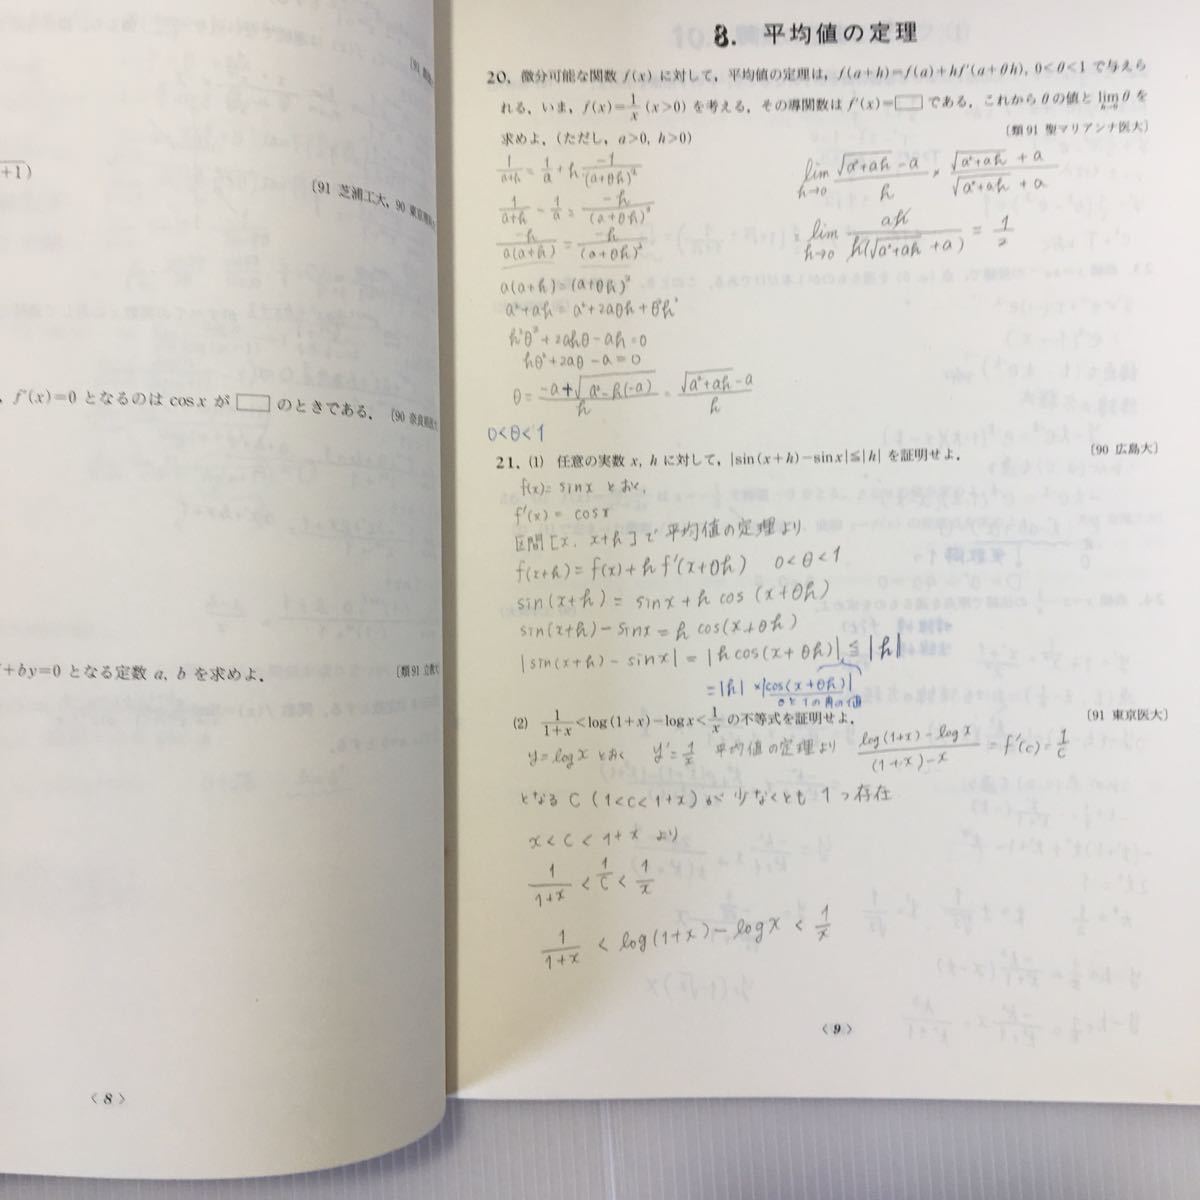 zaa-045★プラスノート微分・積分 (日本語) 単行本 1993/2/1 数学問題研究会 (著)